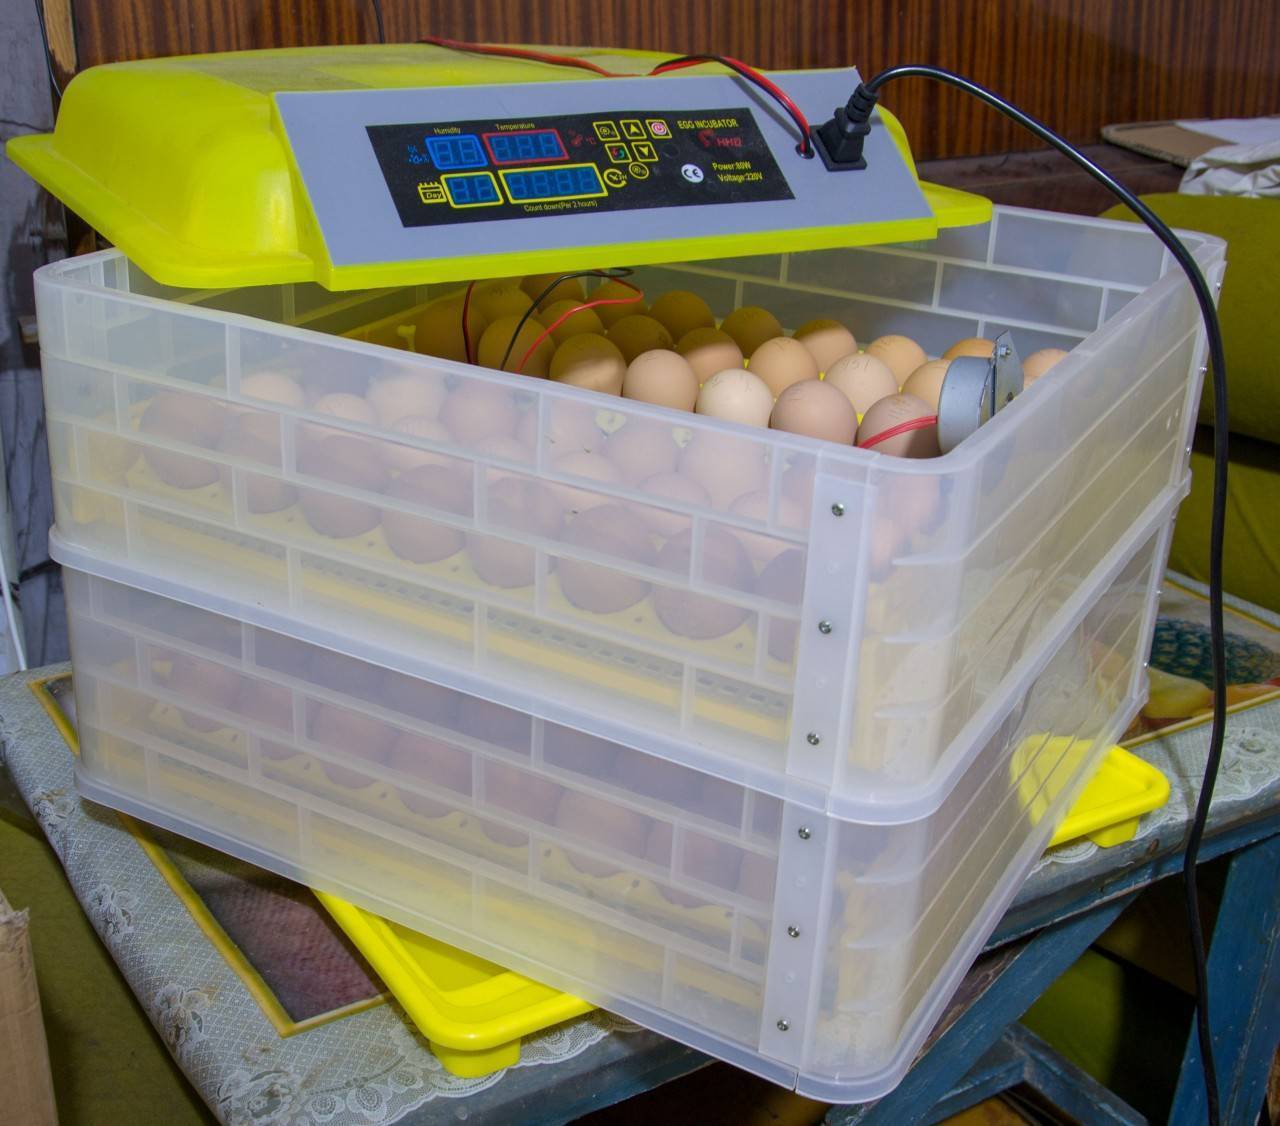 Инкубатор своими руками: как сделать для яиц из холодильника с терморегулятором, схемы, чертежи, фото и видео, изготовление для успешного птицеводства selo.guru — интернет портал о сельском хозяйстве